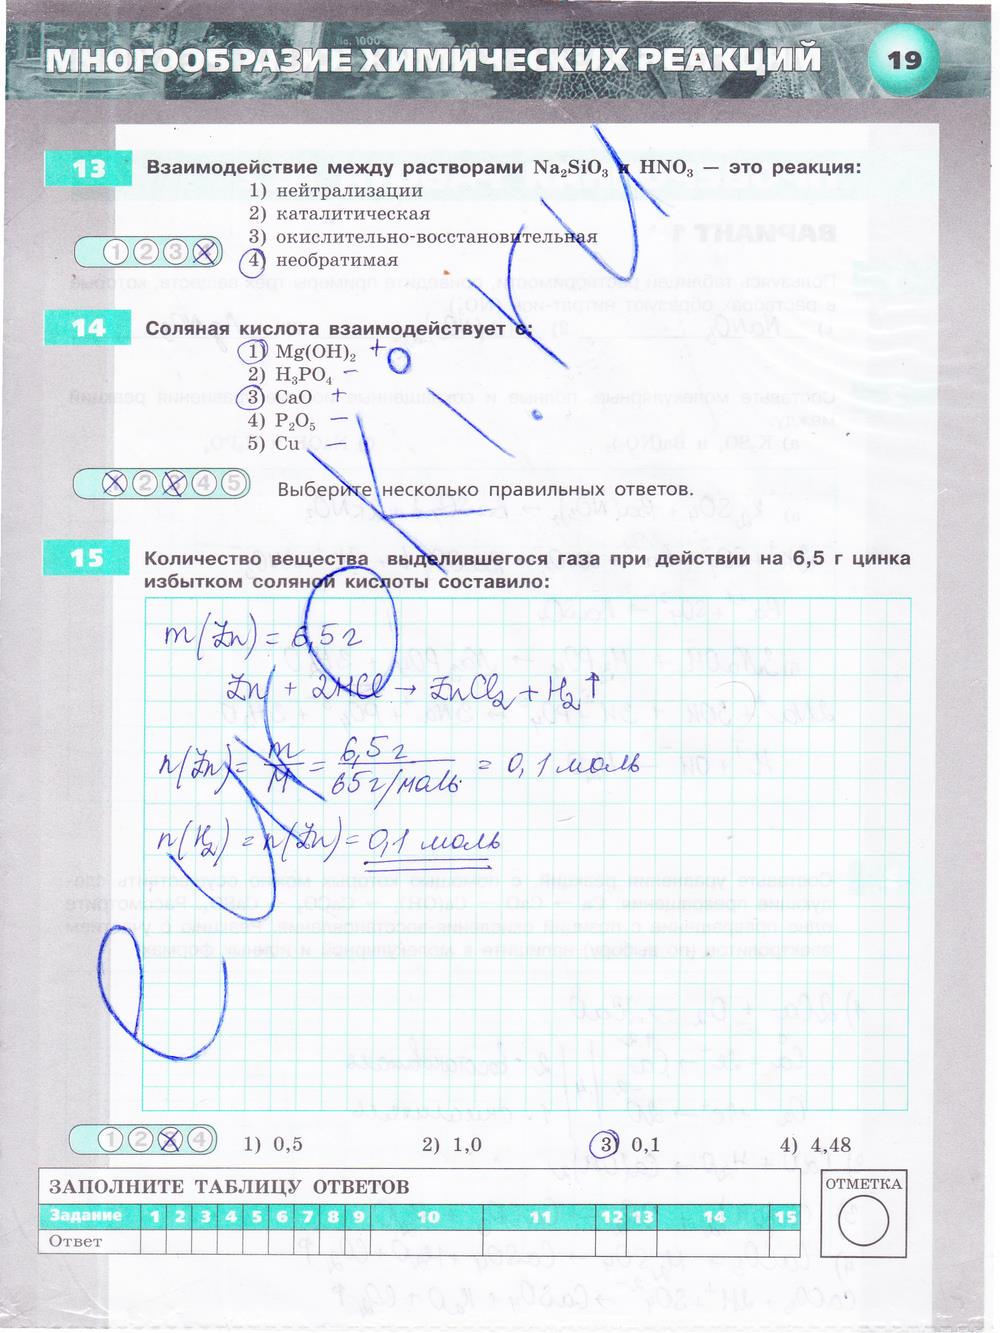 гдз 9 класс тетрадь-экзаменатор страница 19 химия Бобылева, Бирюлина